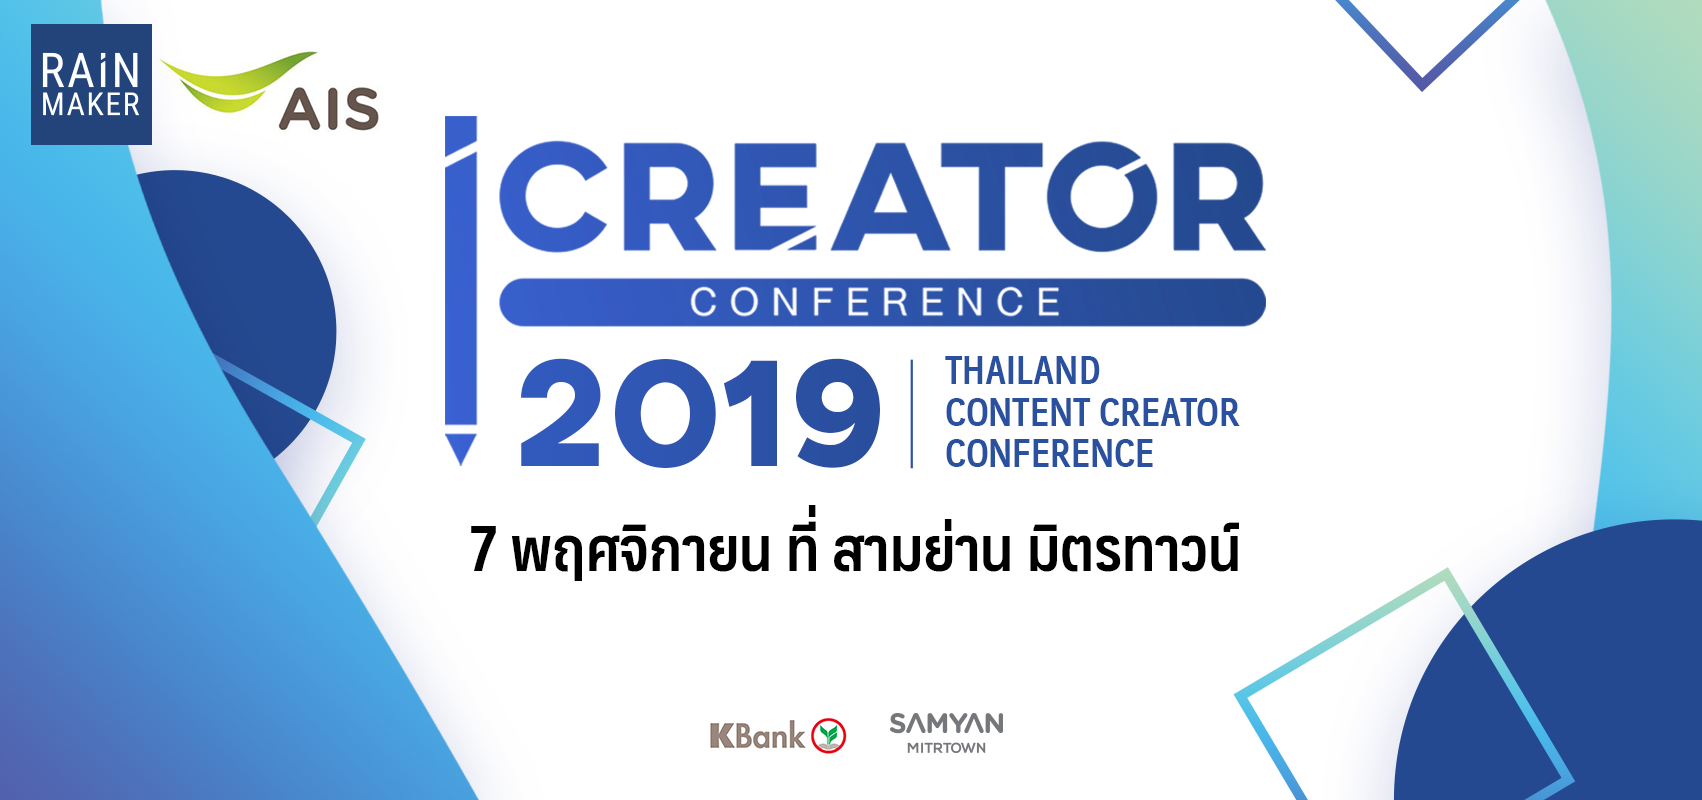 iCreator Conference 2019 งานสัมมนาครั้งใหญ่ของ Con...